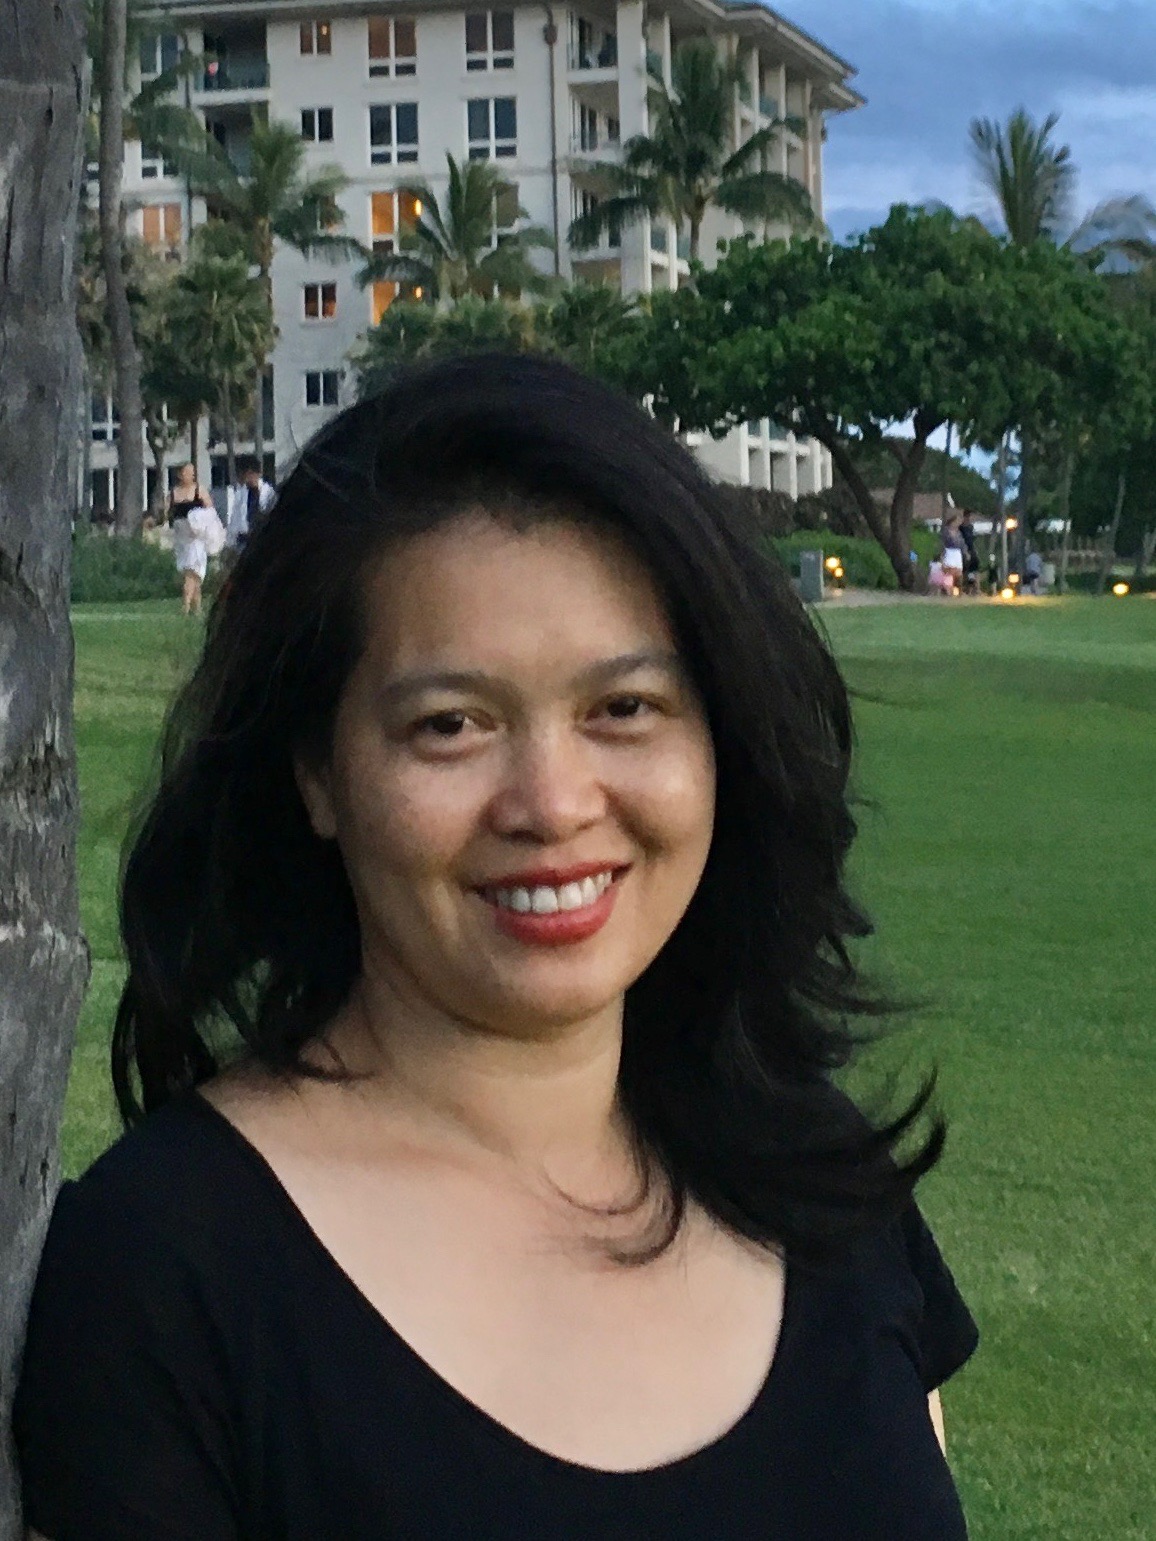 Becky Nguyen